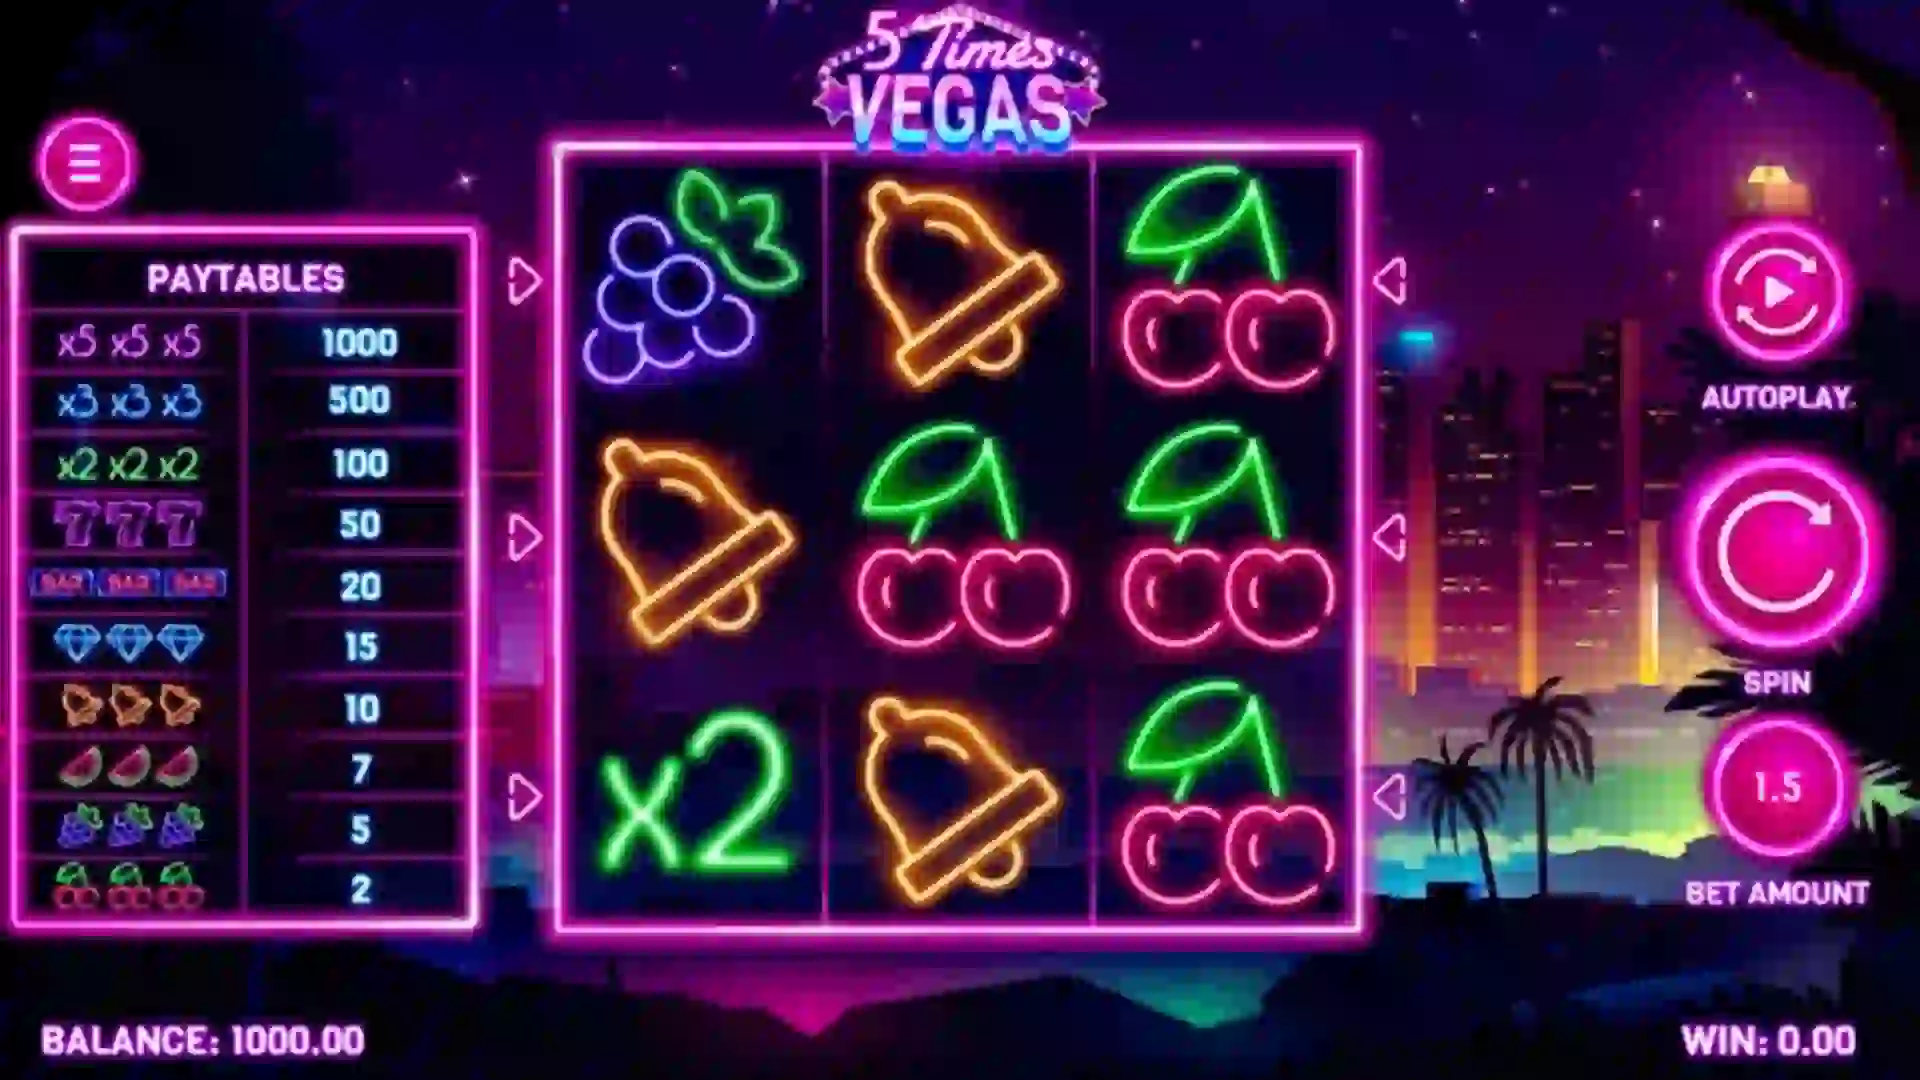 5 Times Vegas game